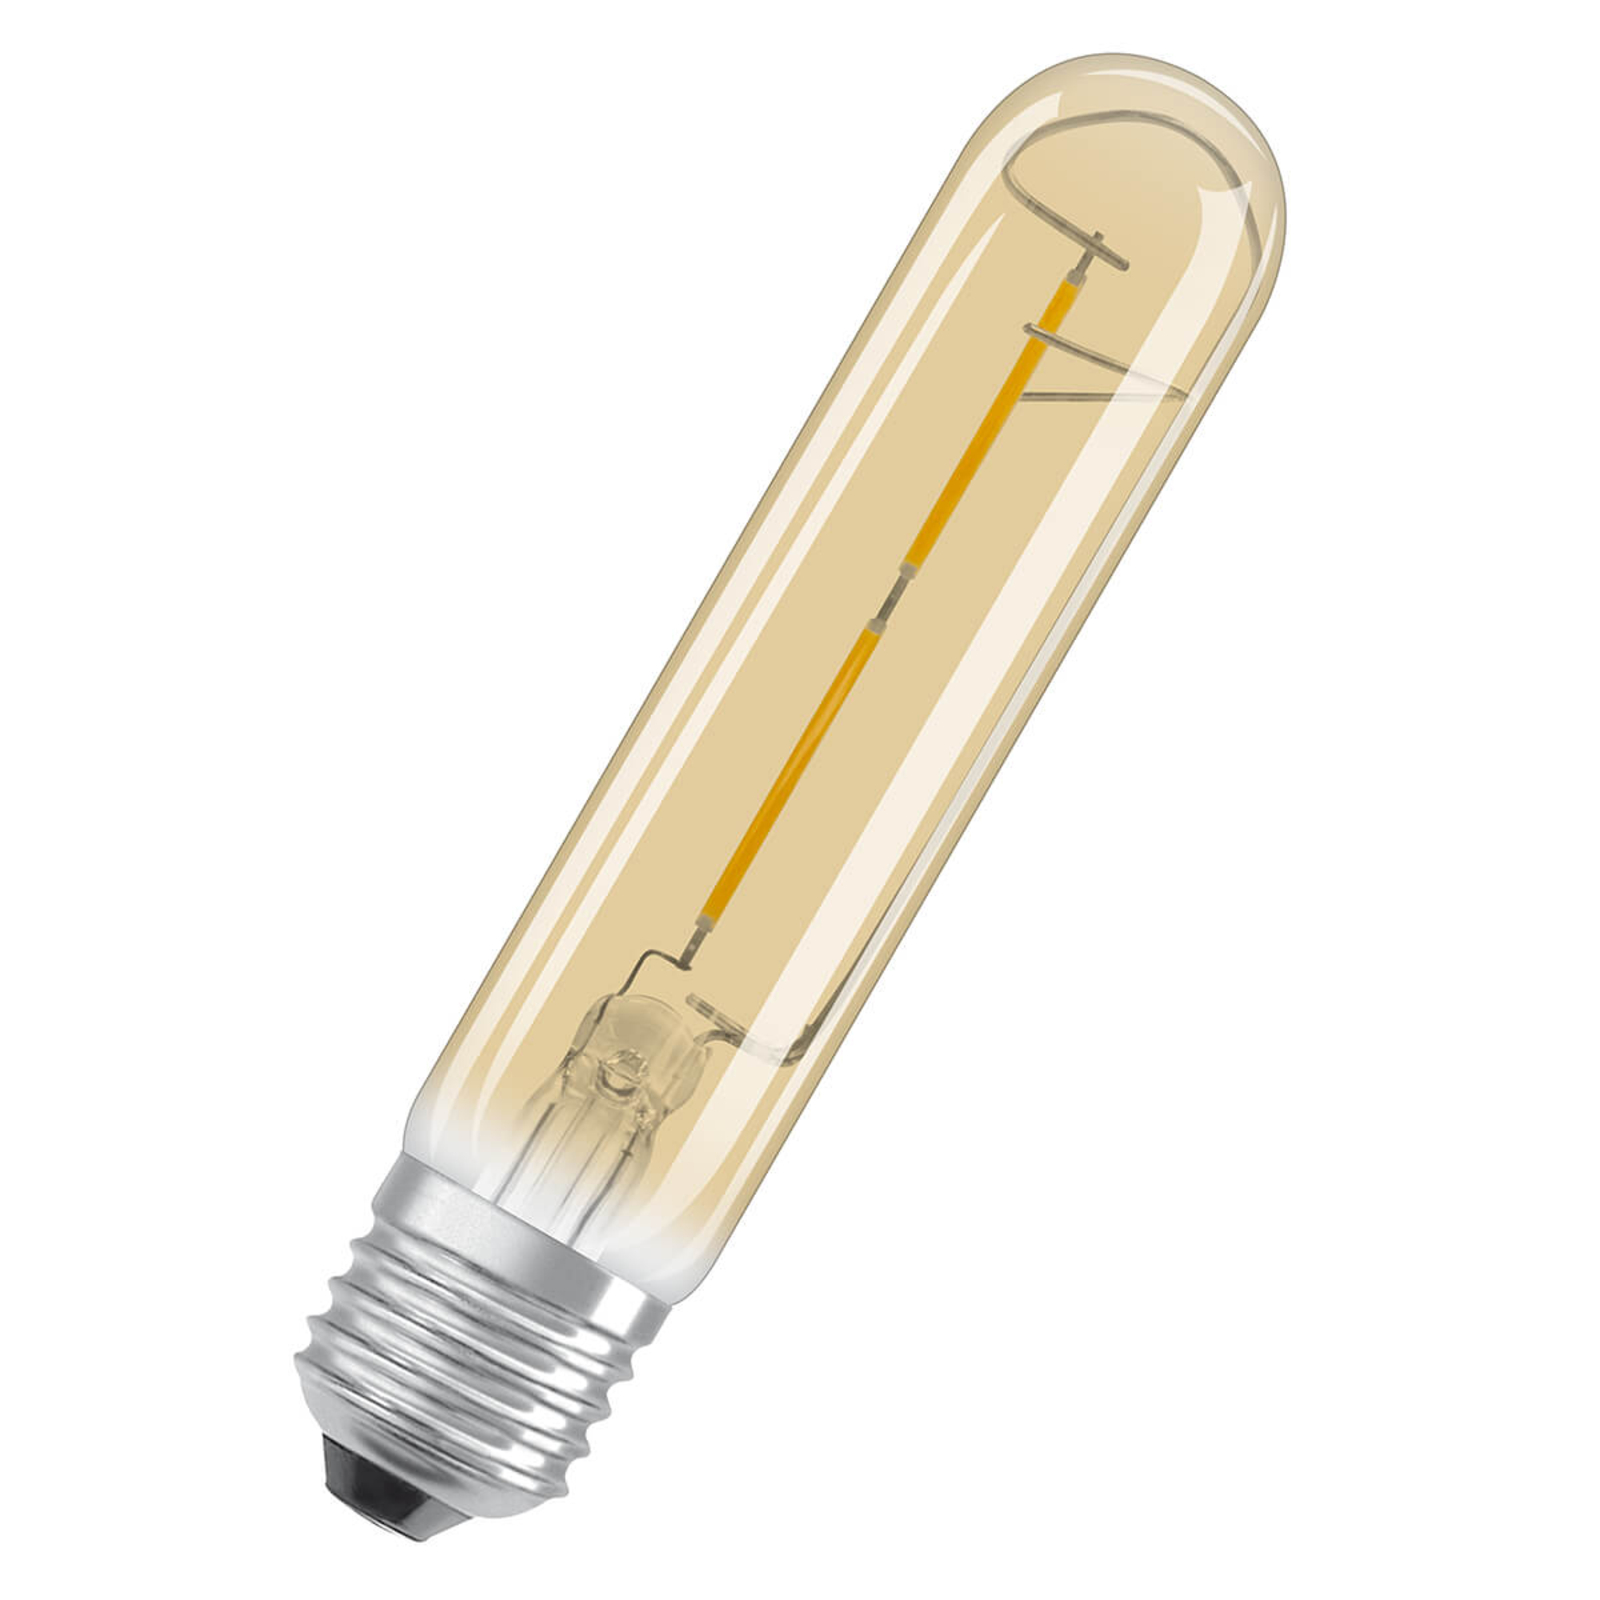 LED-rørlampe Gold E27 2,5 W, varmhvit, 200 lumen